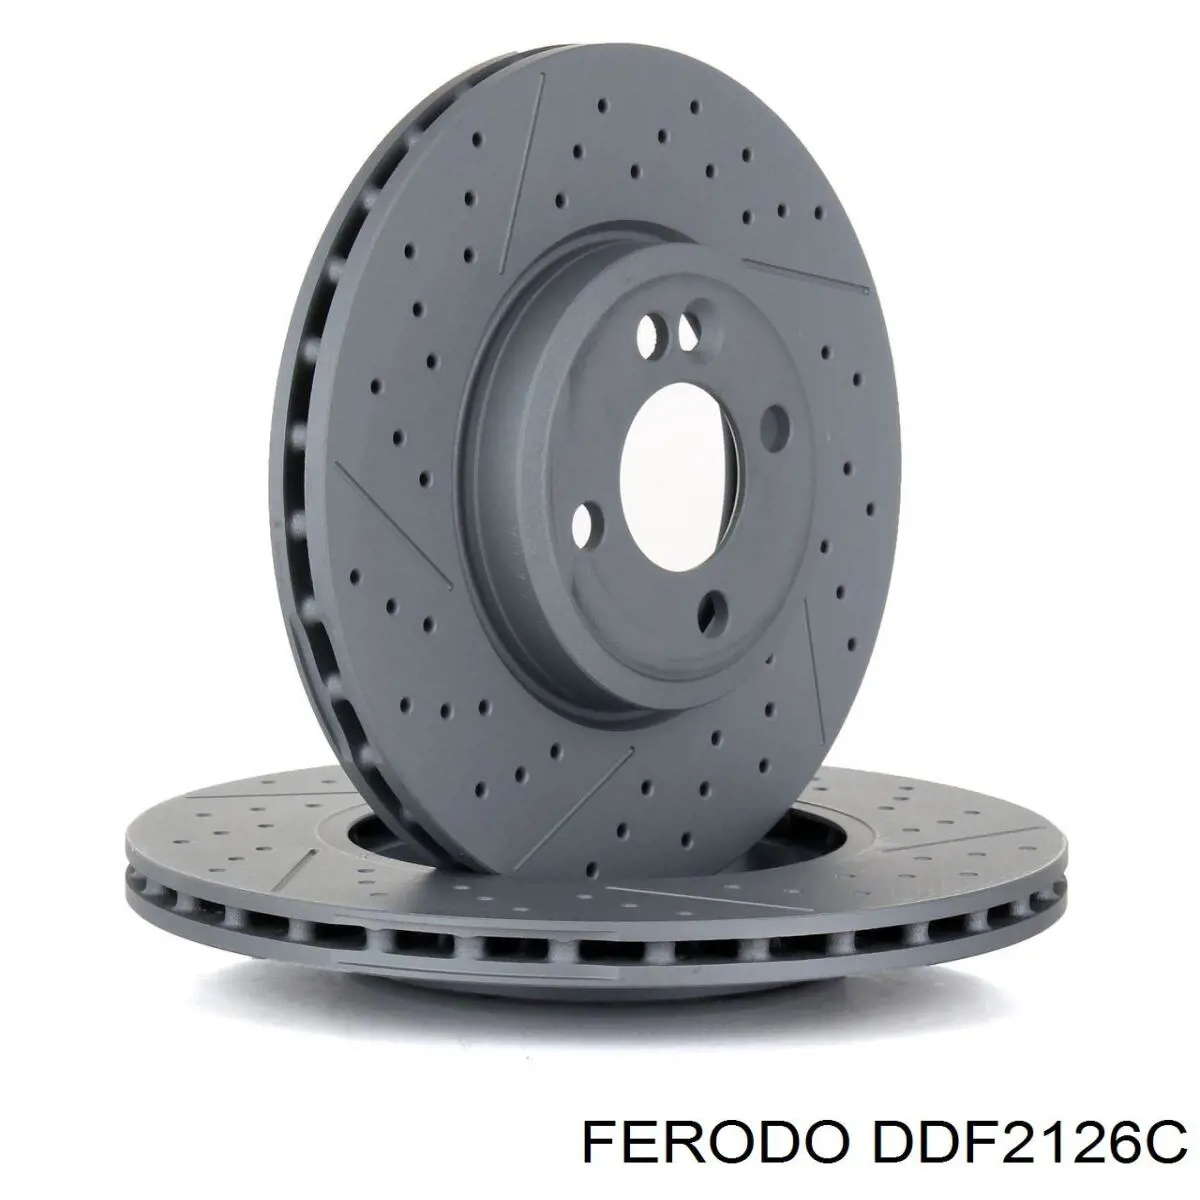 DDF2126C Ferodo disco do freio dianteiro